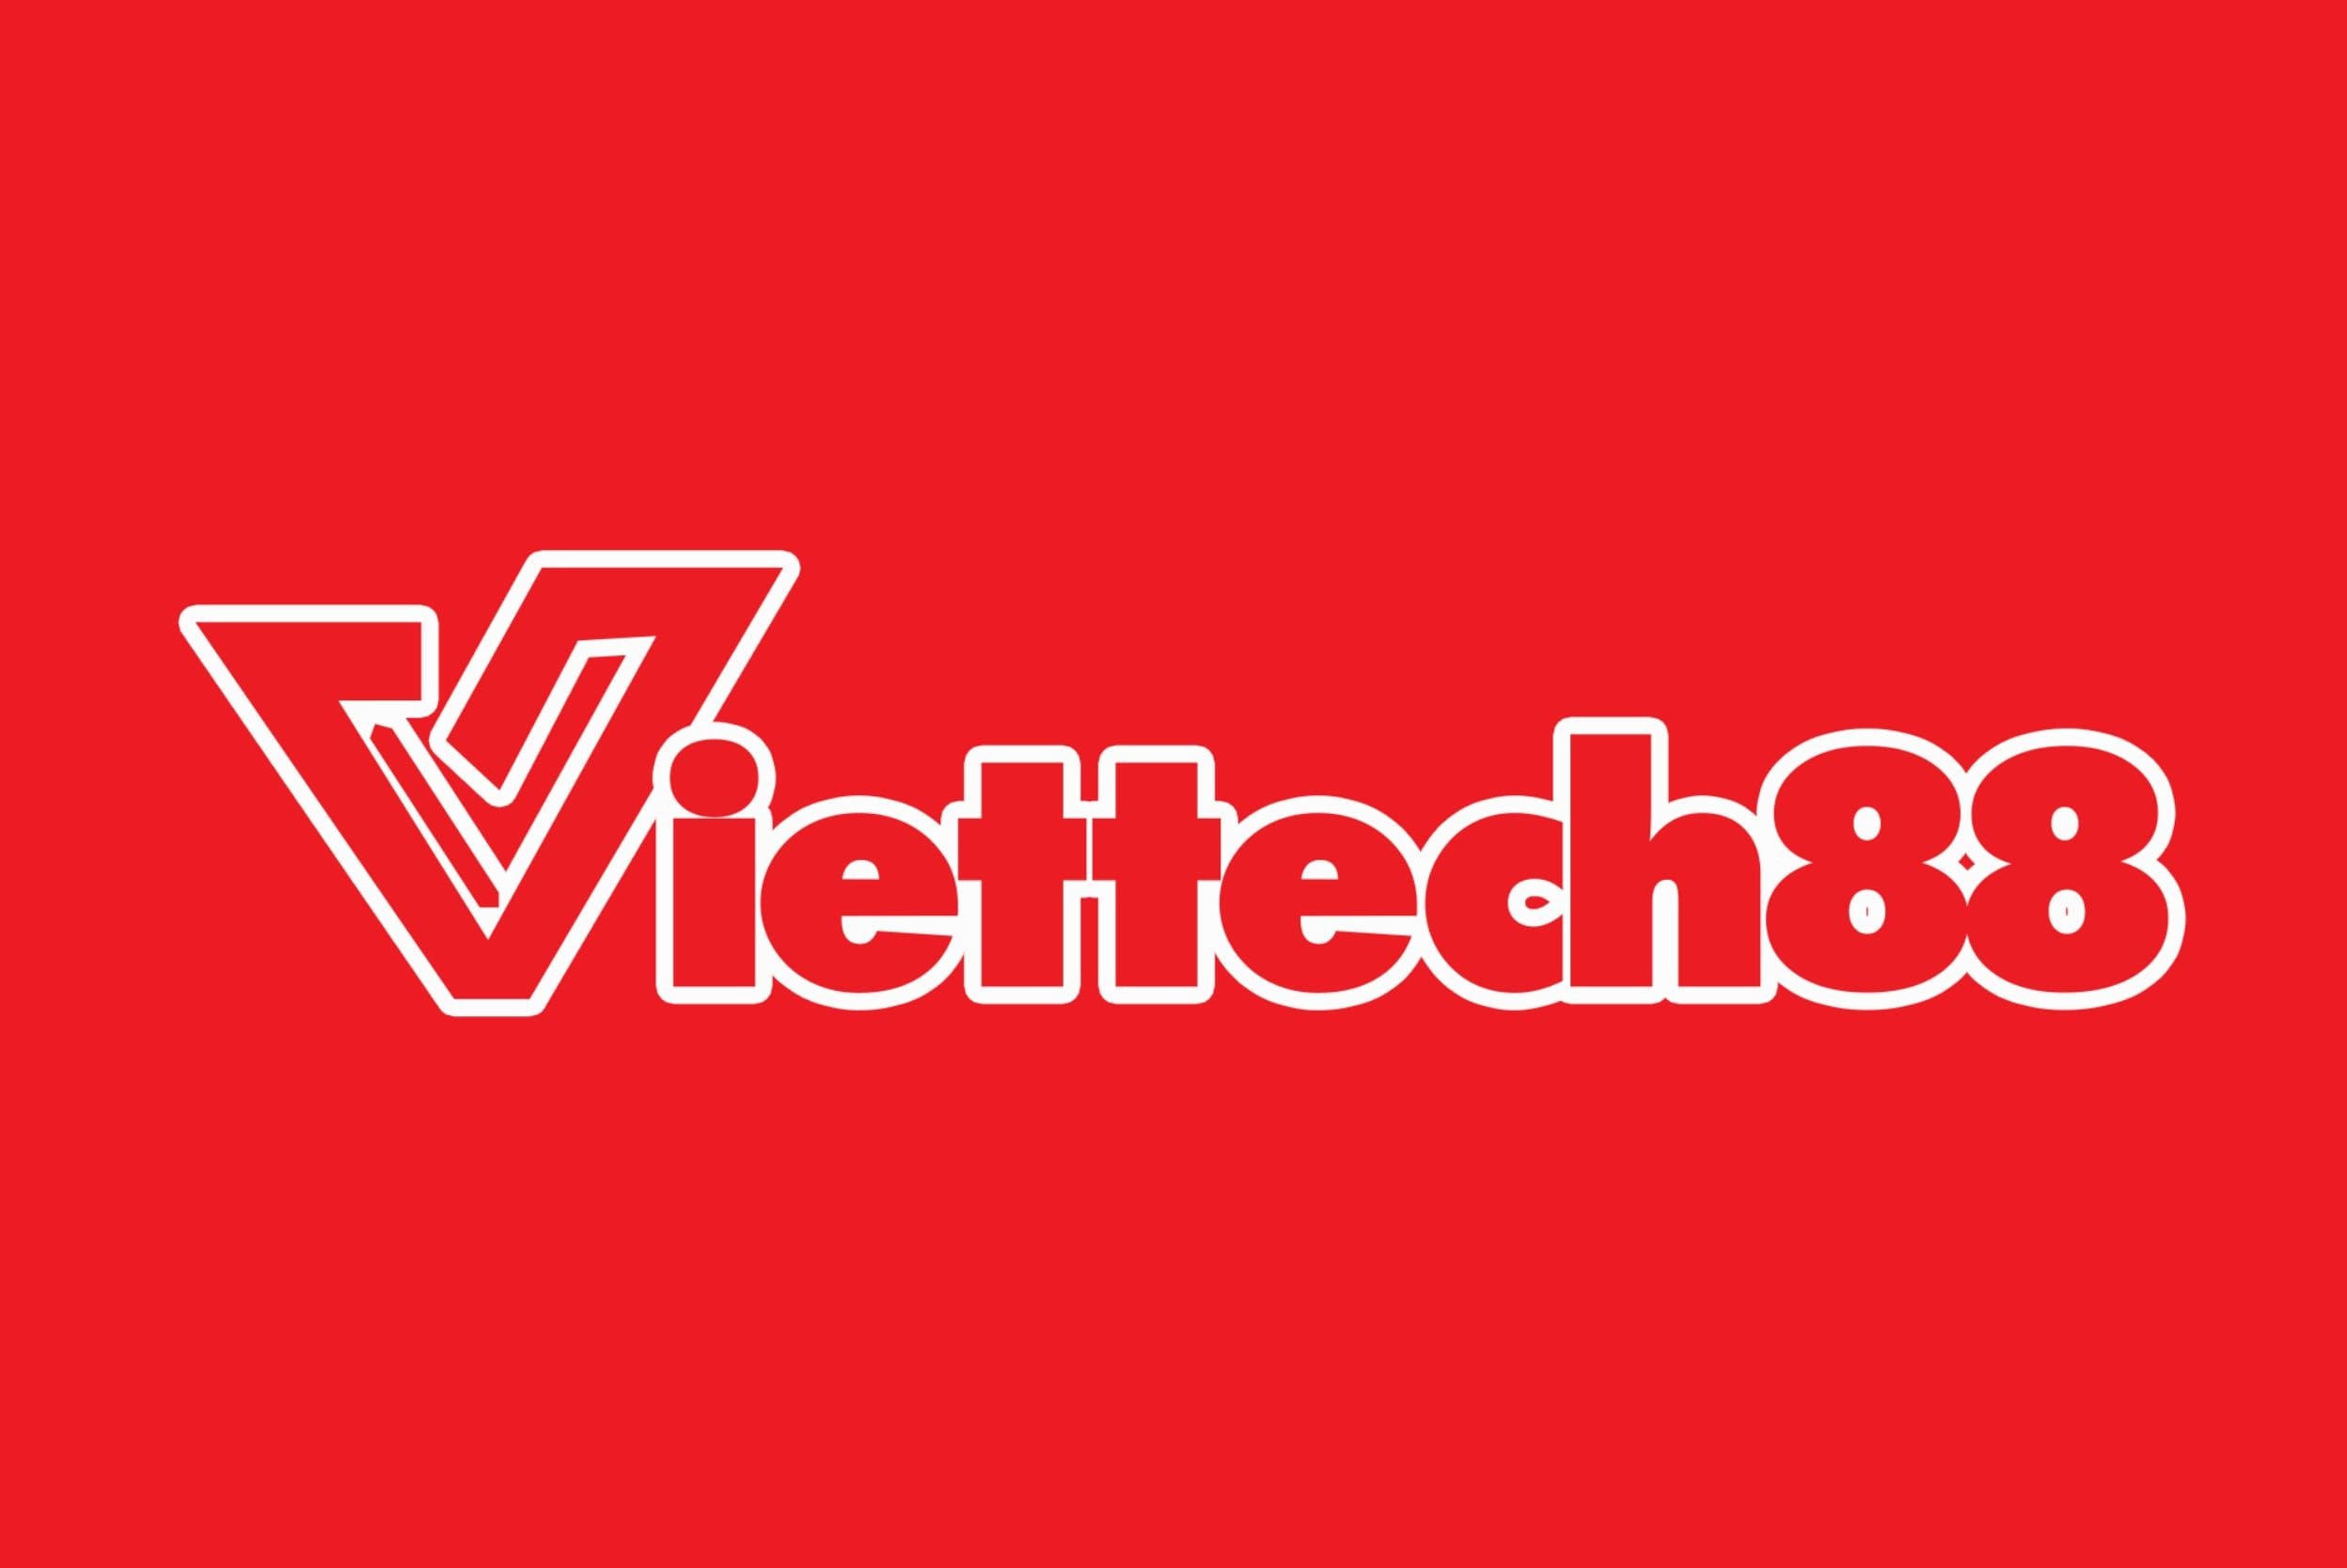 Viettech88-logo